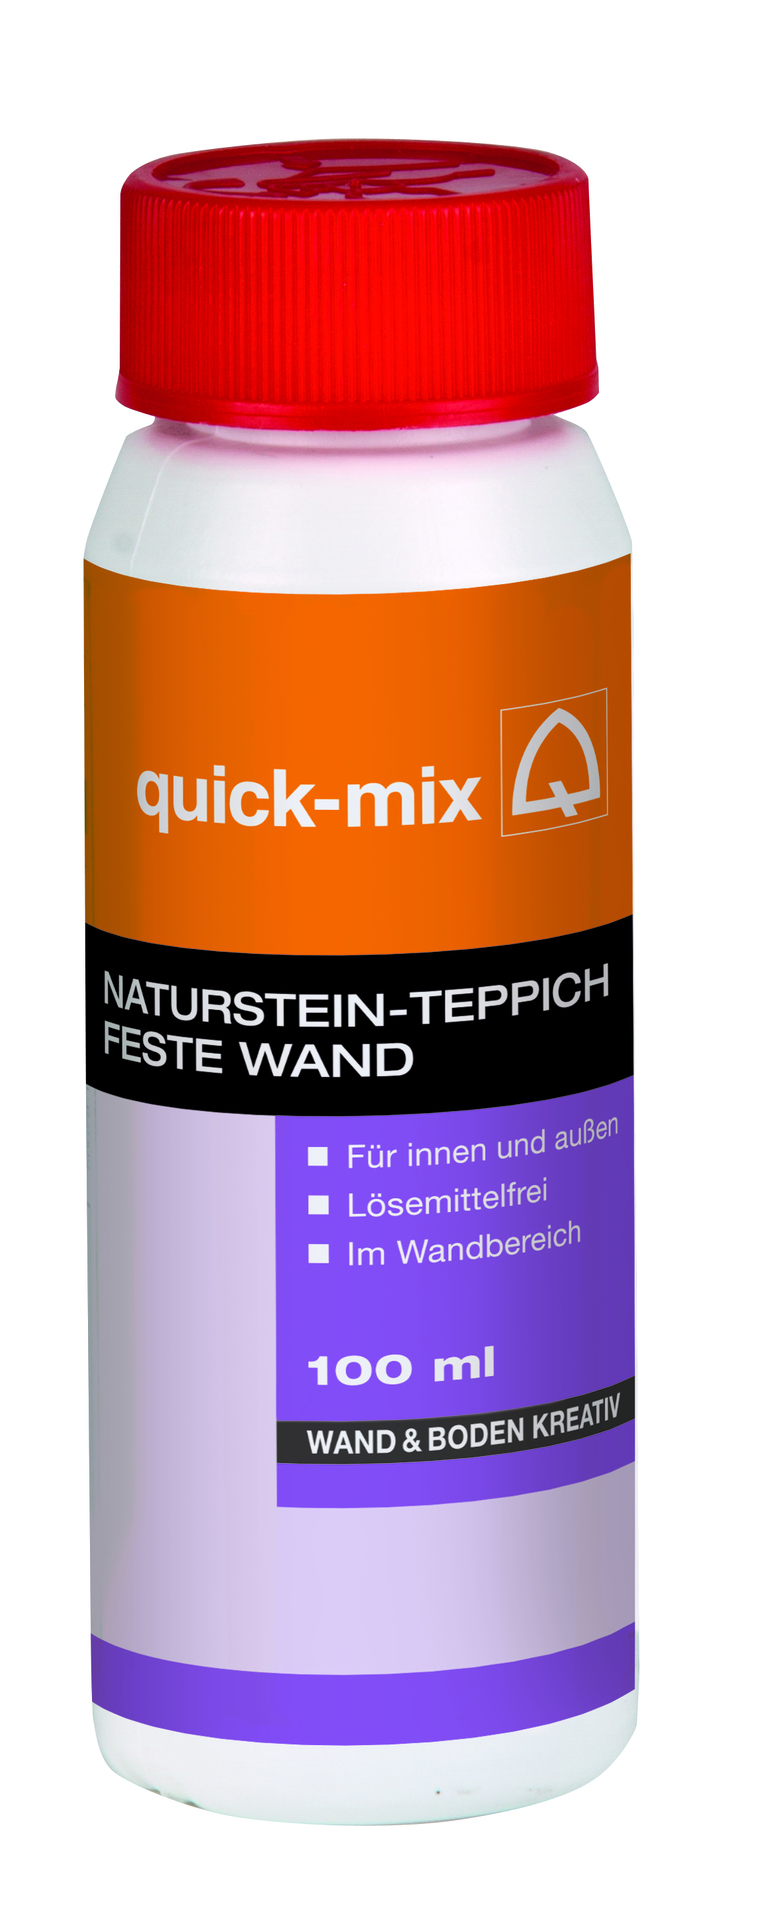 Sievert Baustoffe GmbH Naturstein-Teppich Feste Wand